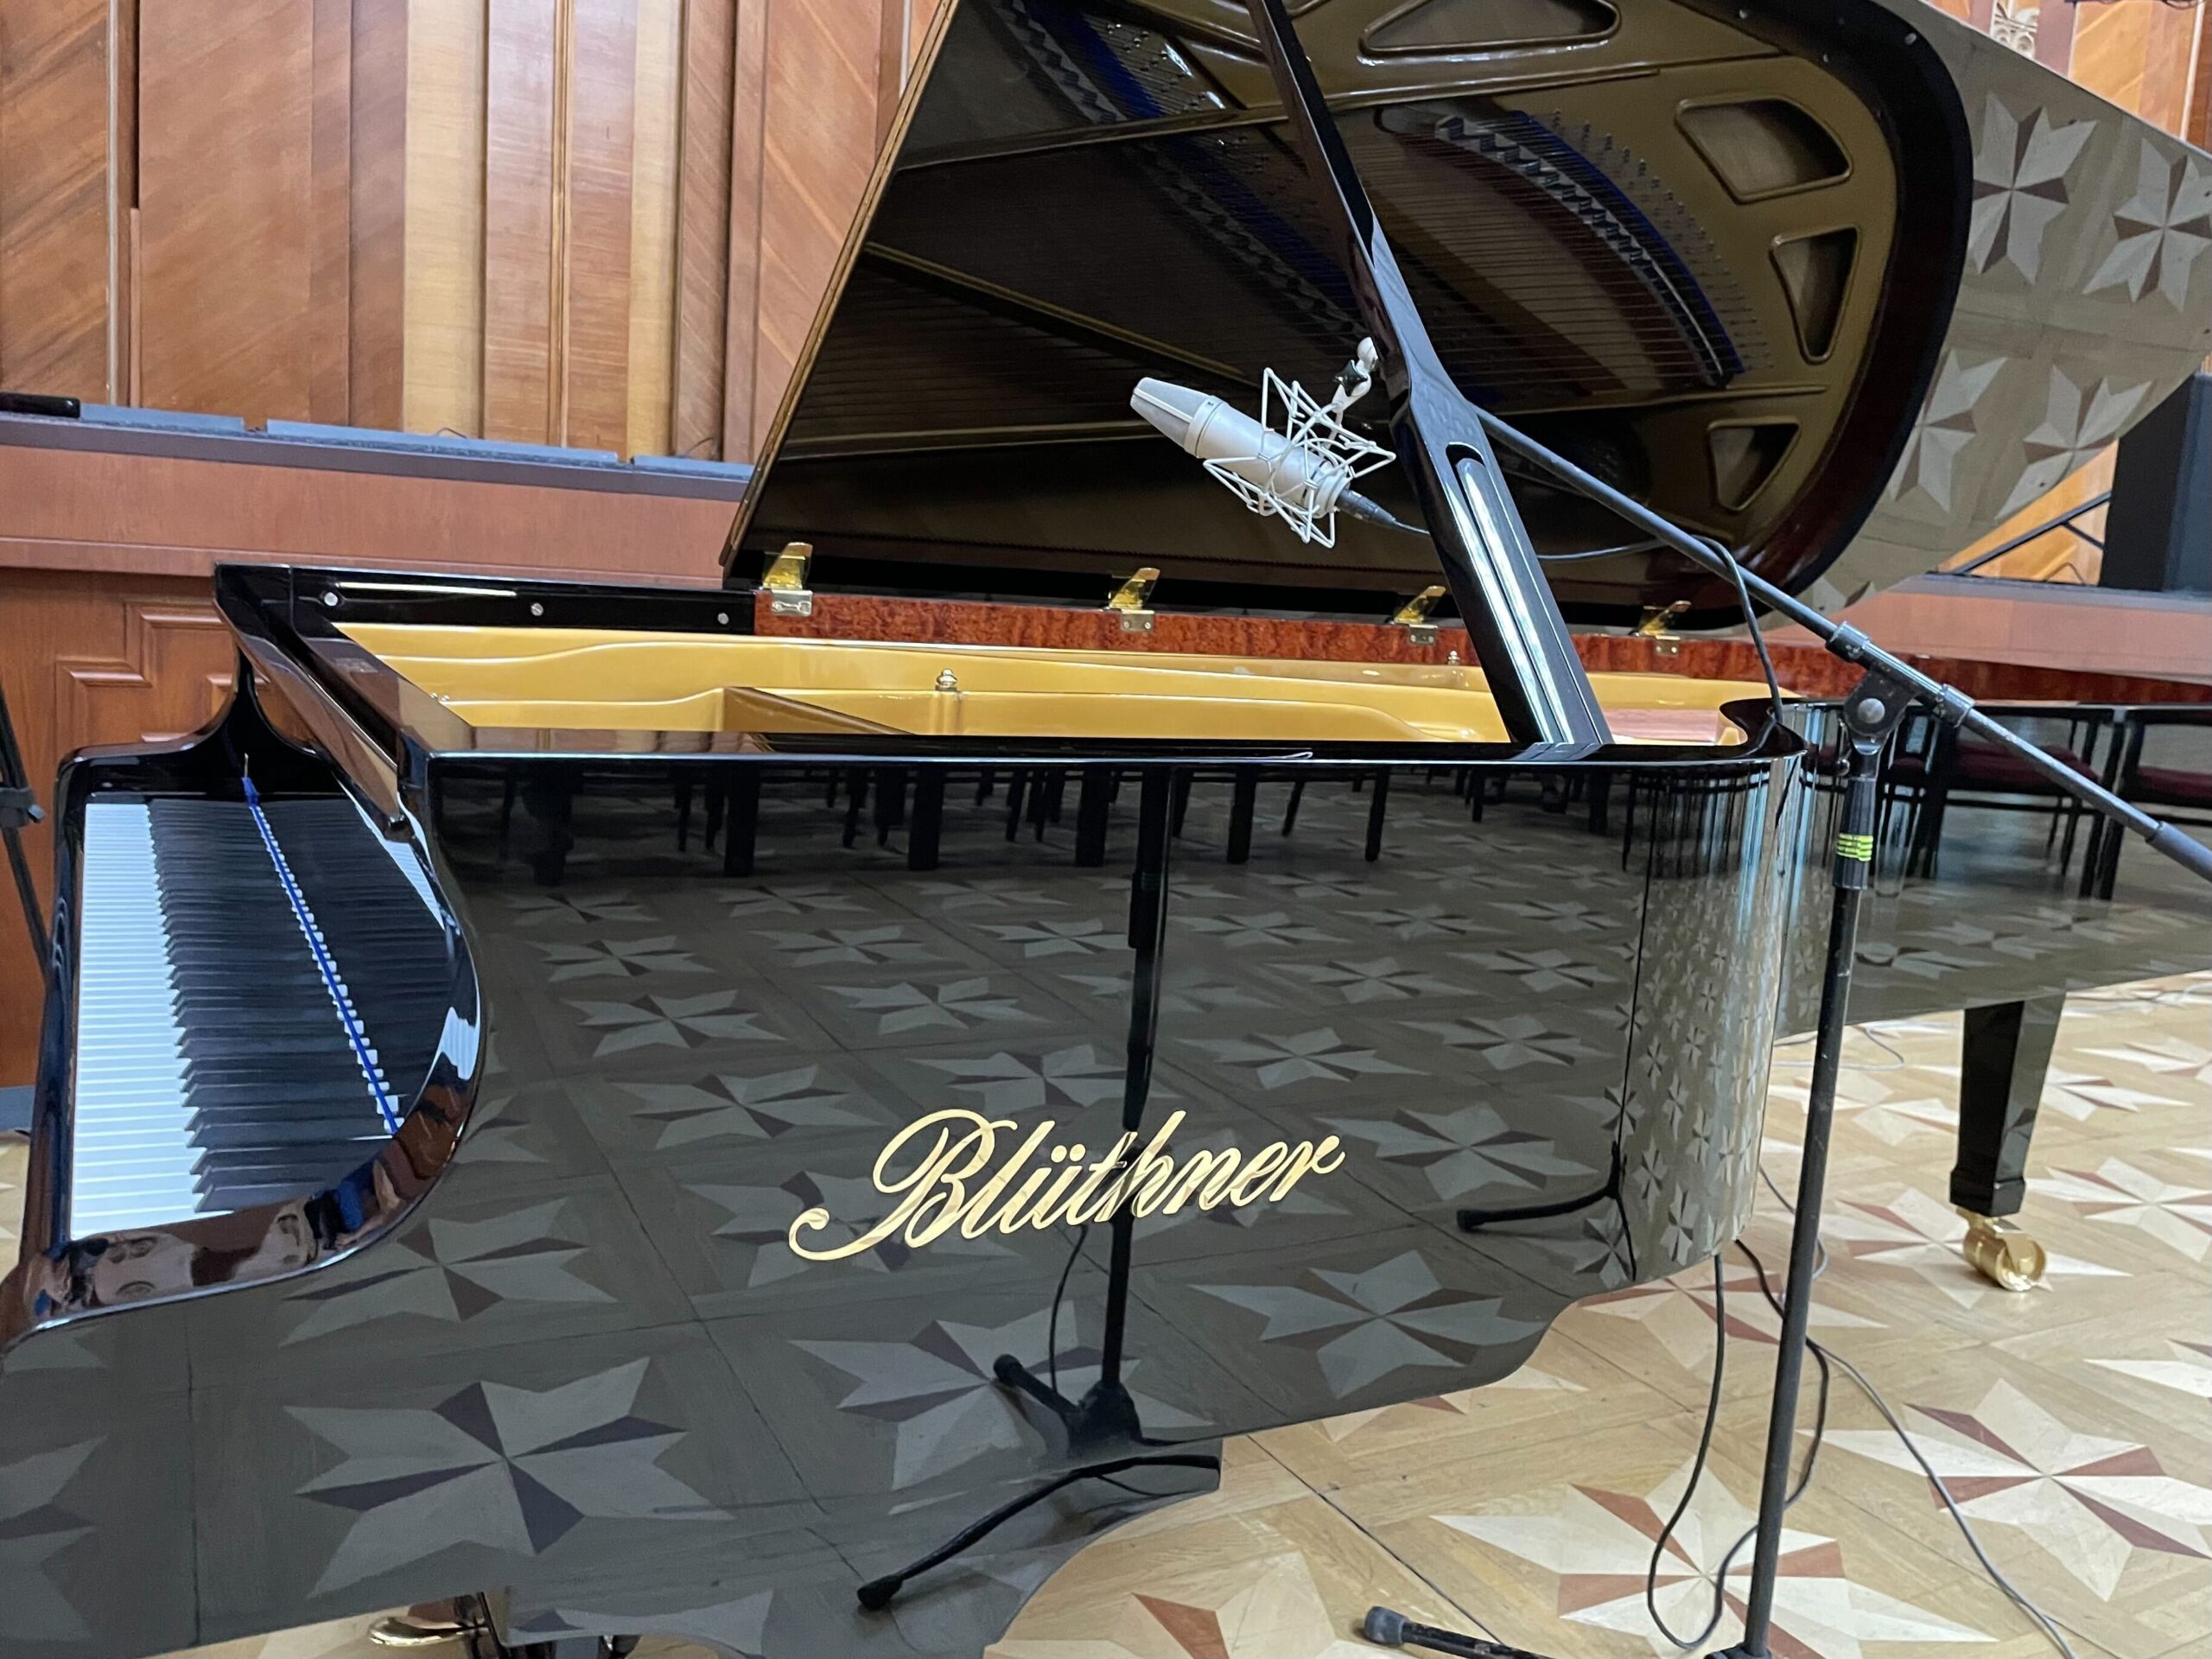 (ФОТО) Национальной филармонии подарили рояль Блютнер